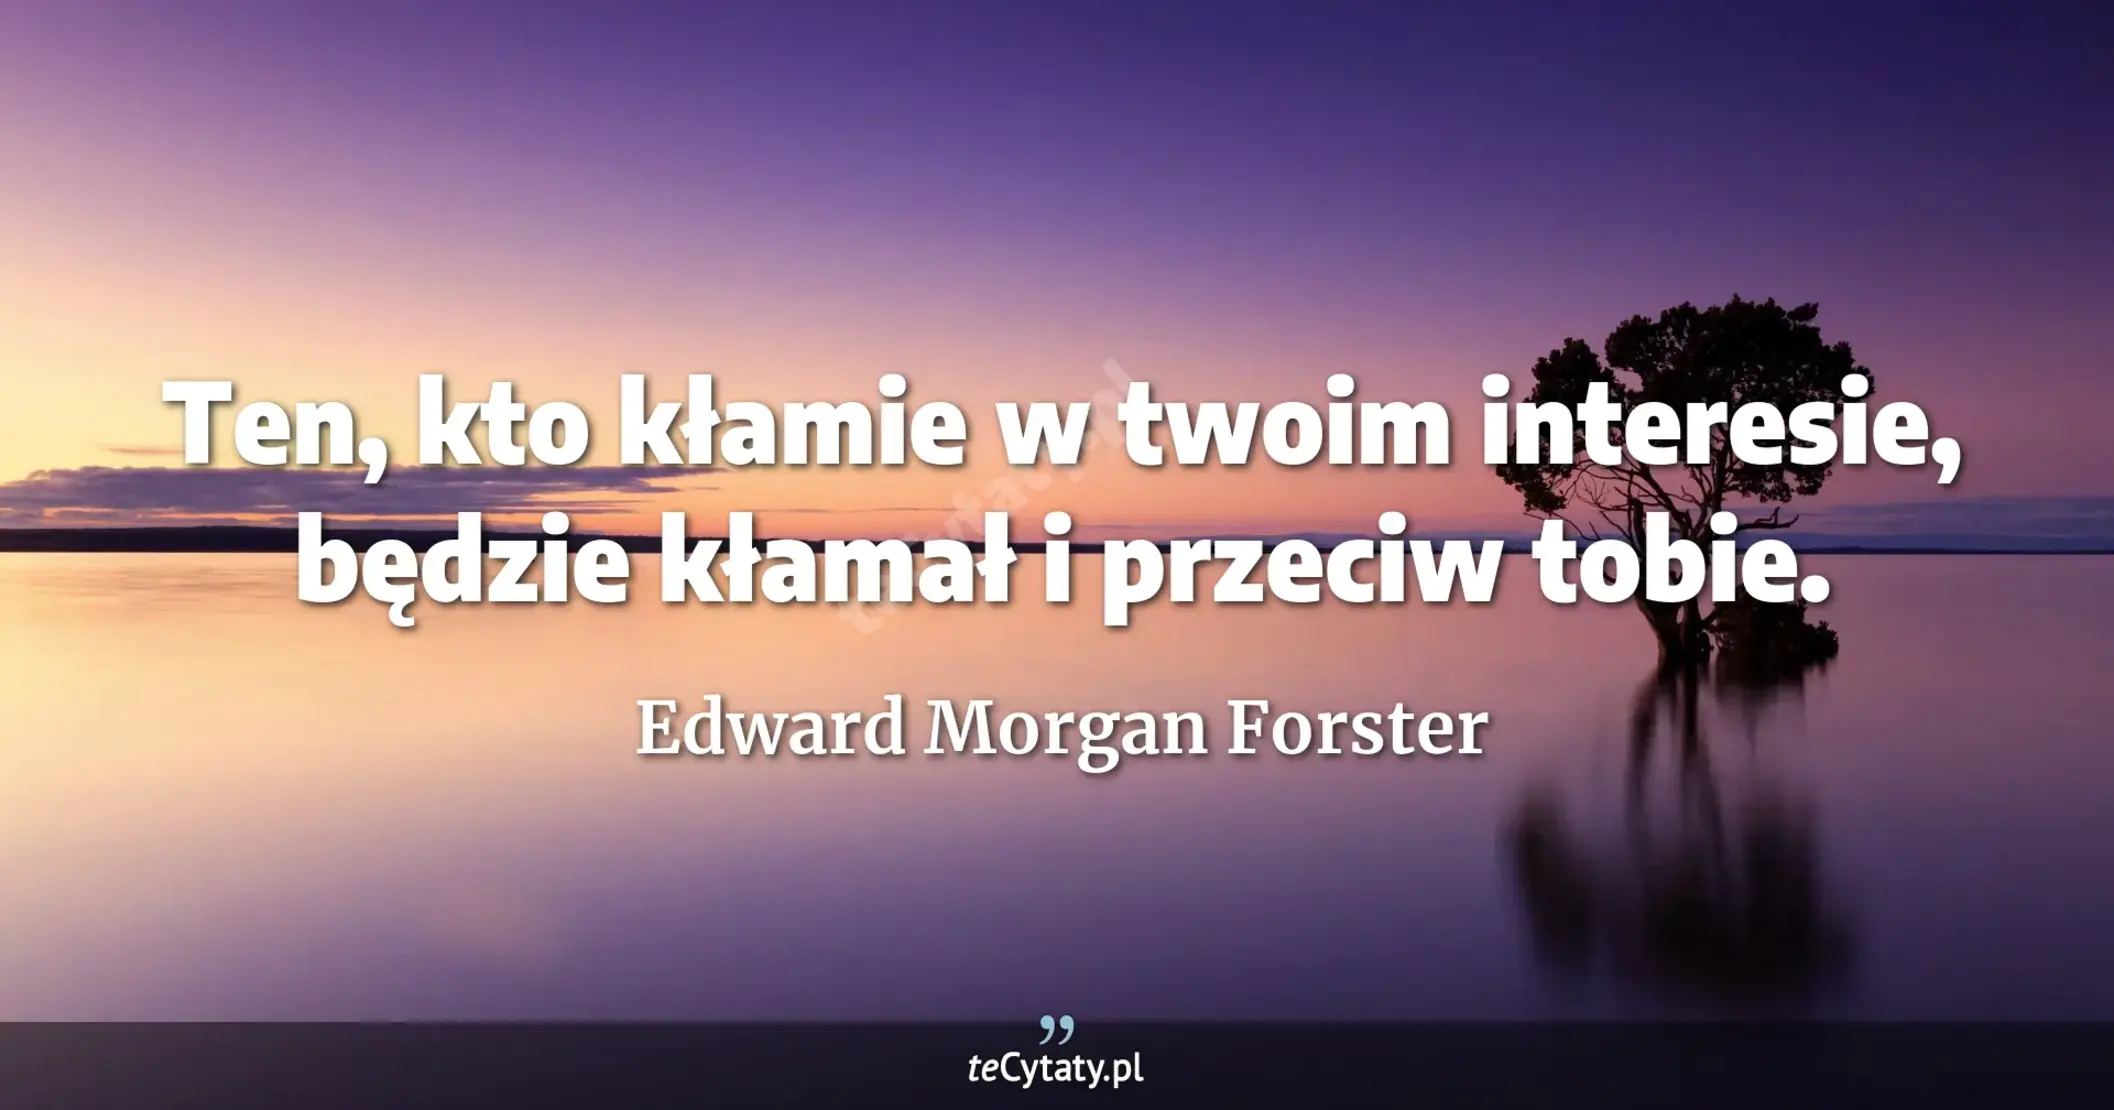 Ten, kto kłamie w twoim interesie, będzie kłamał i przeciw tobie. - Edward Morgan Forster